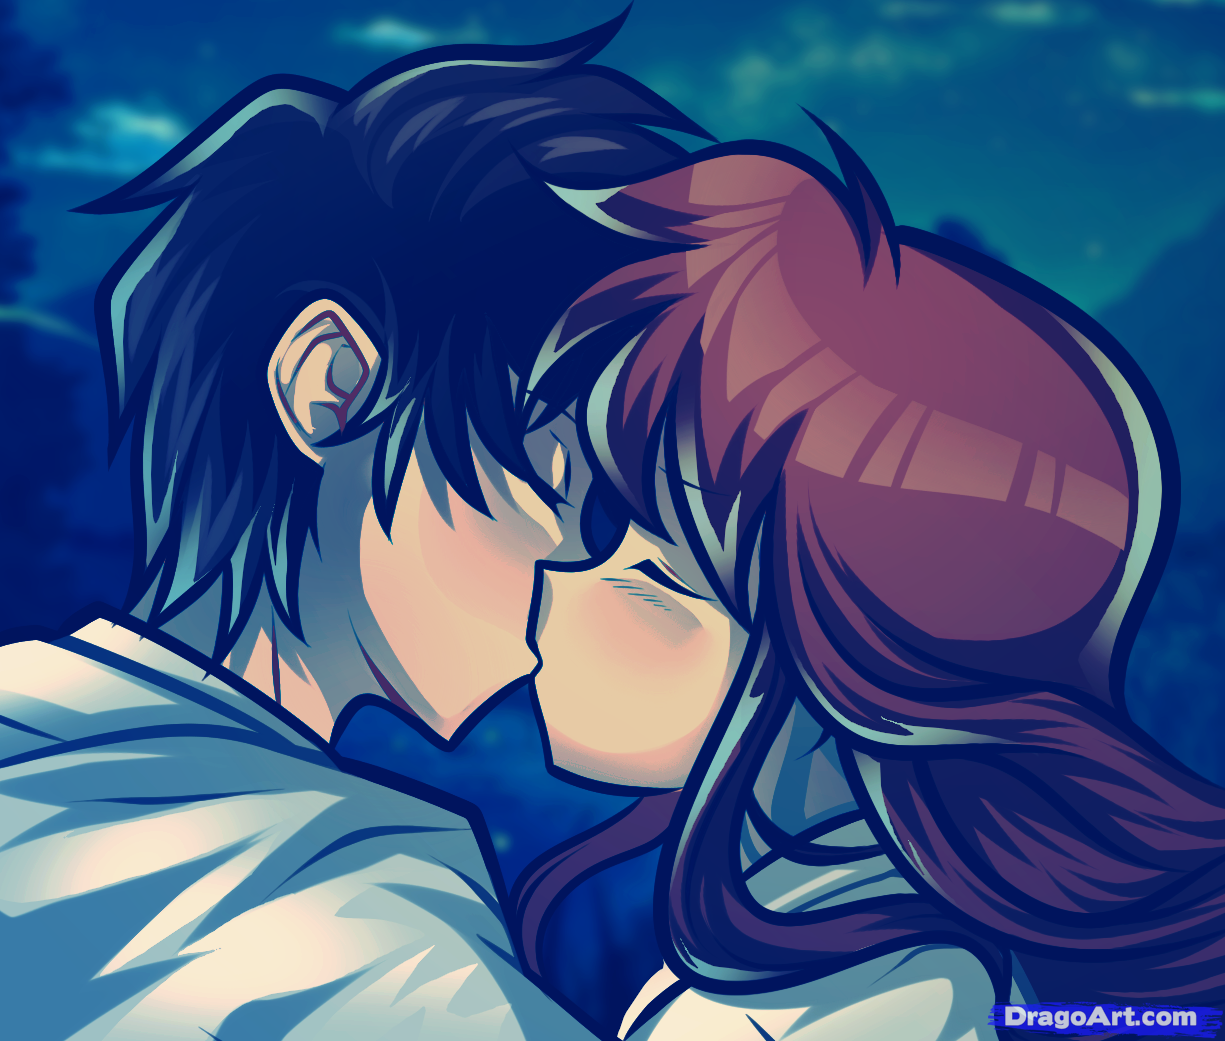 Cute Kiss Anime Cute Kiss Anime